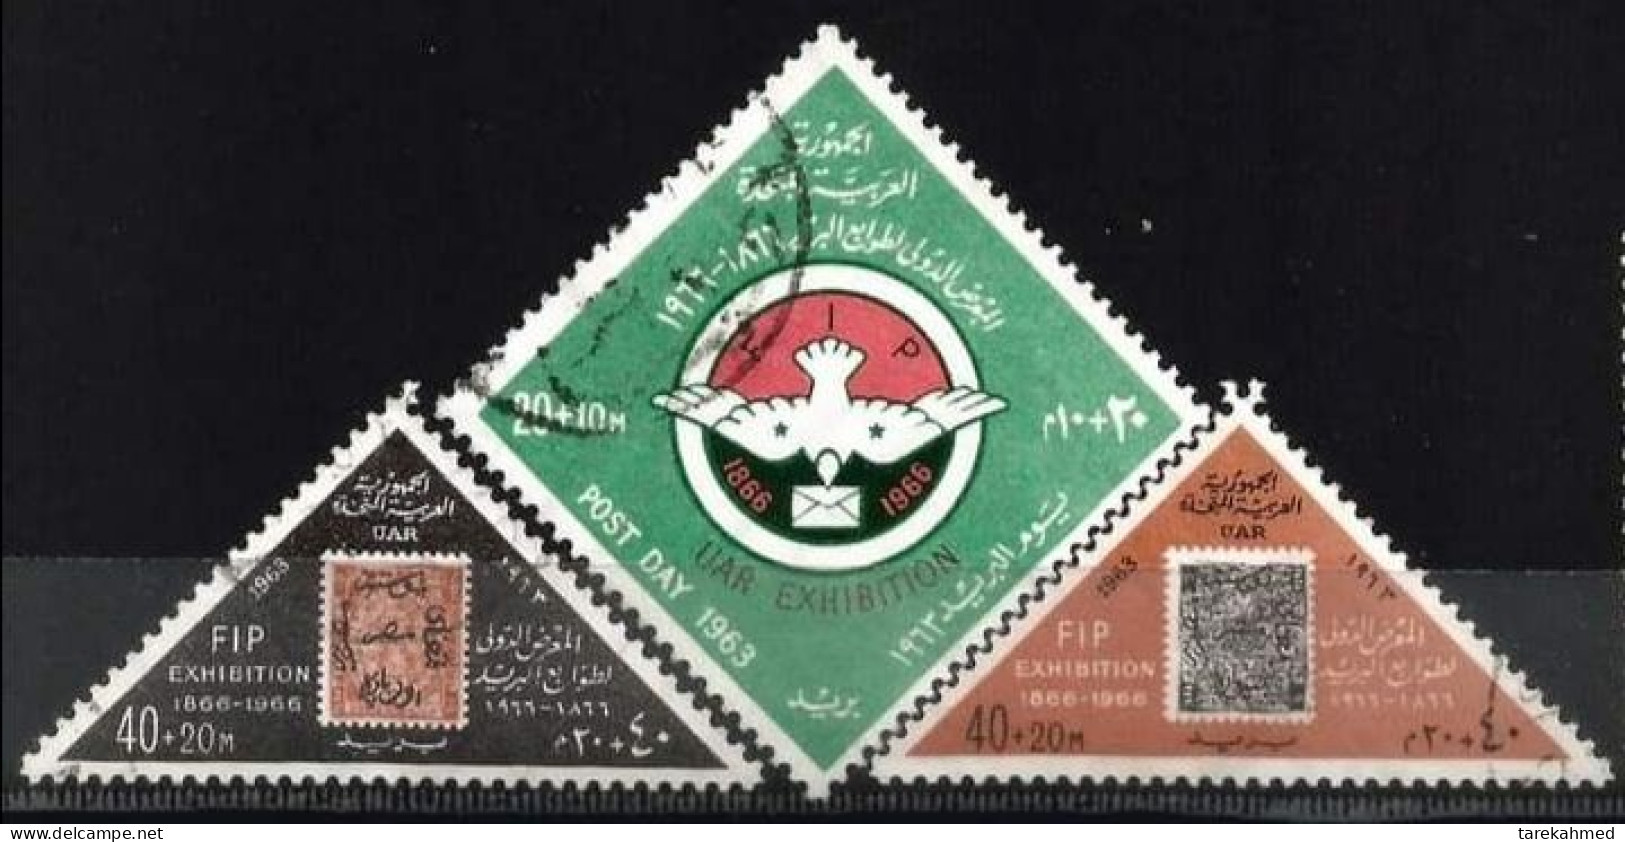 EGYPTE 1963, FIP & UAR Exhibition, YVERT N°555/57, VF - Gebraucht